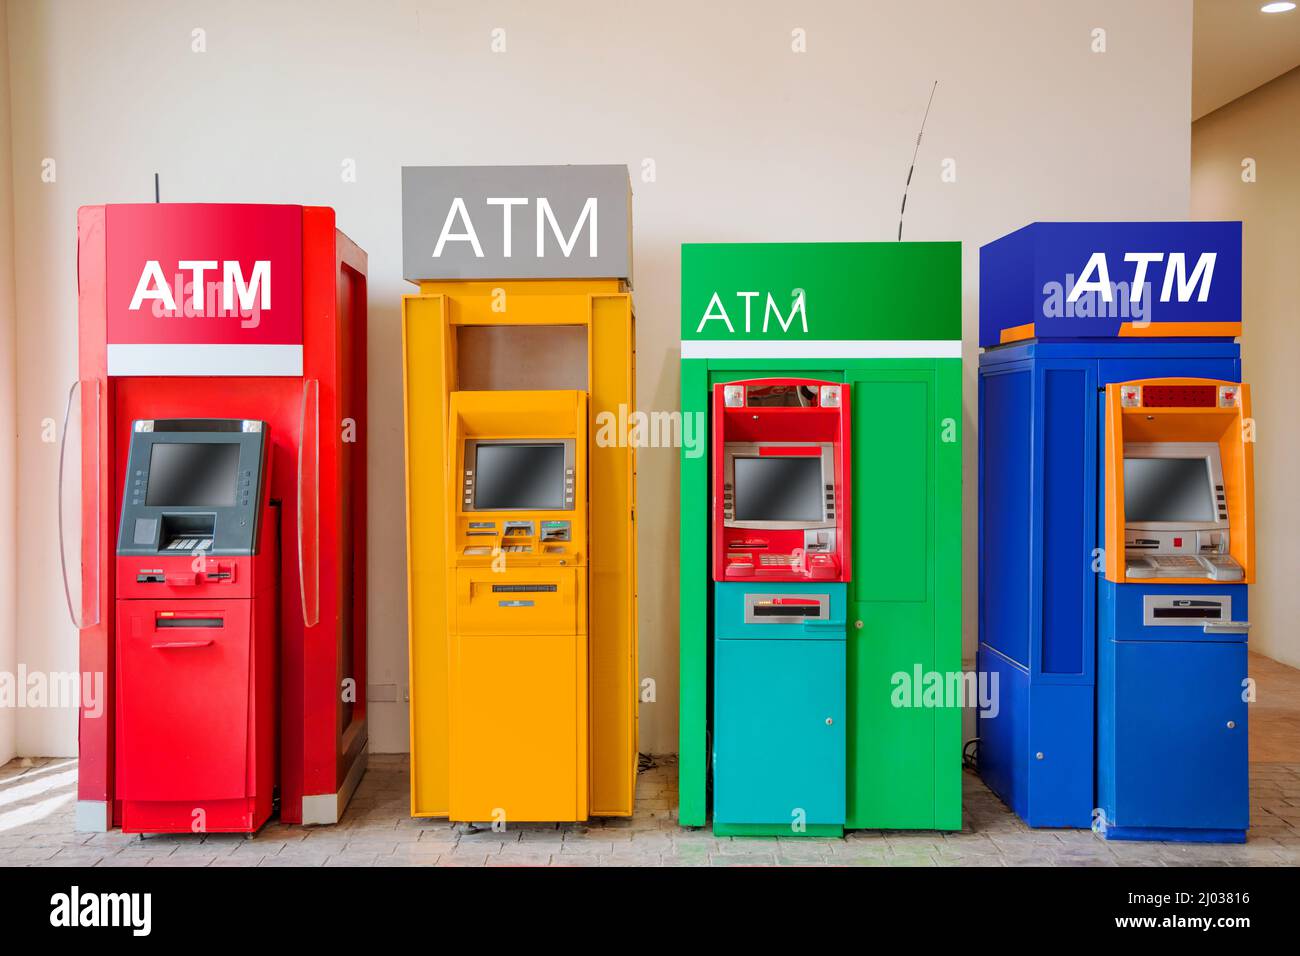 ATM-Maschine Banking Bargeld Geld abheben Service an öffentlichen Ort mehrere Bank. Stockfoto